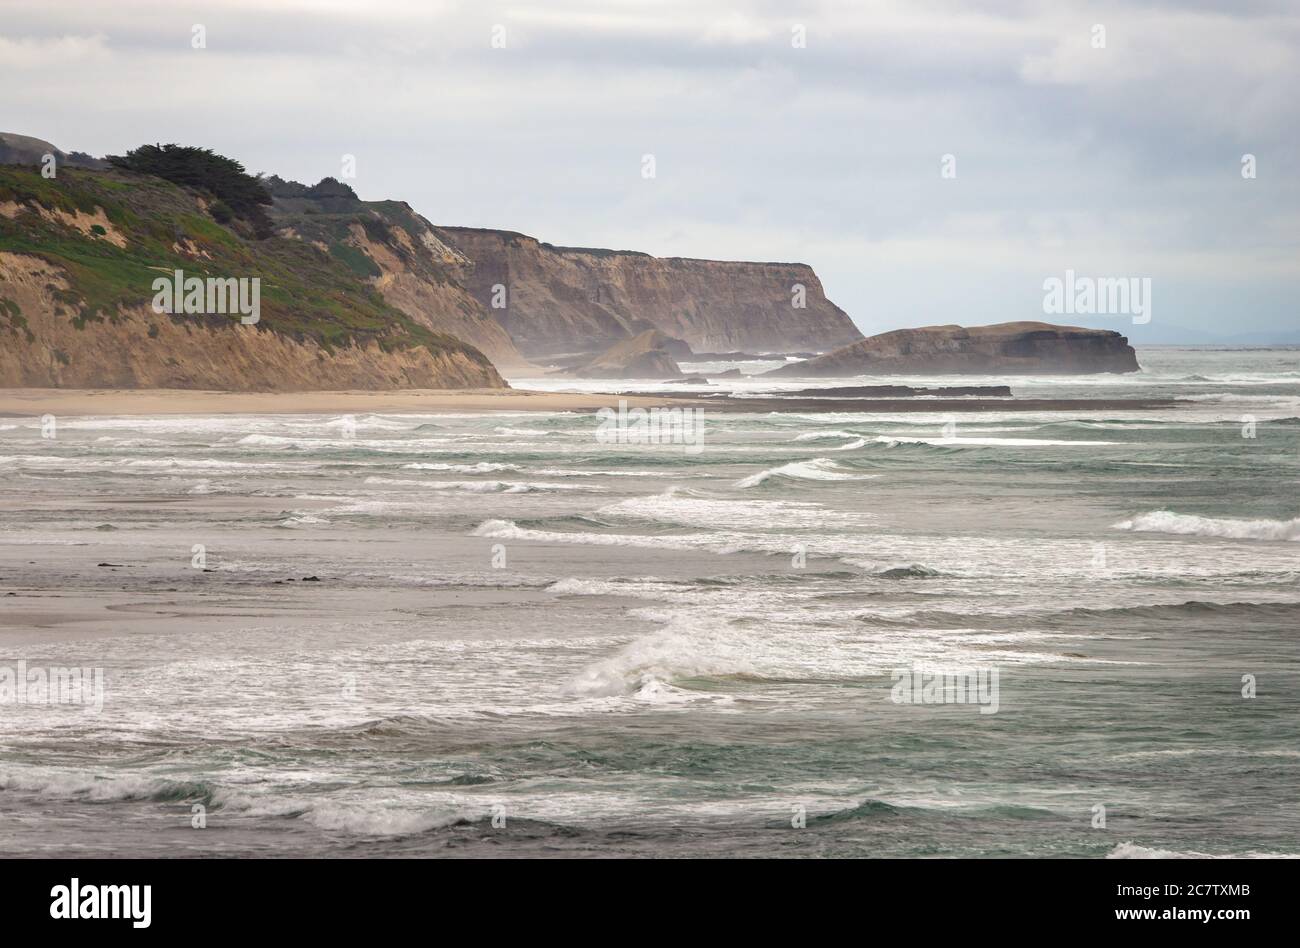 La costa del norte de California, muy borrosa, desde la ruta costera, condado del Norte Foto de stock